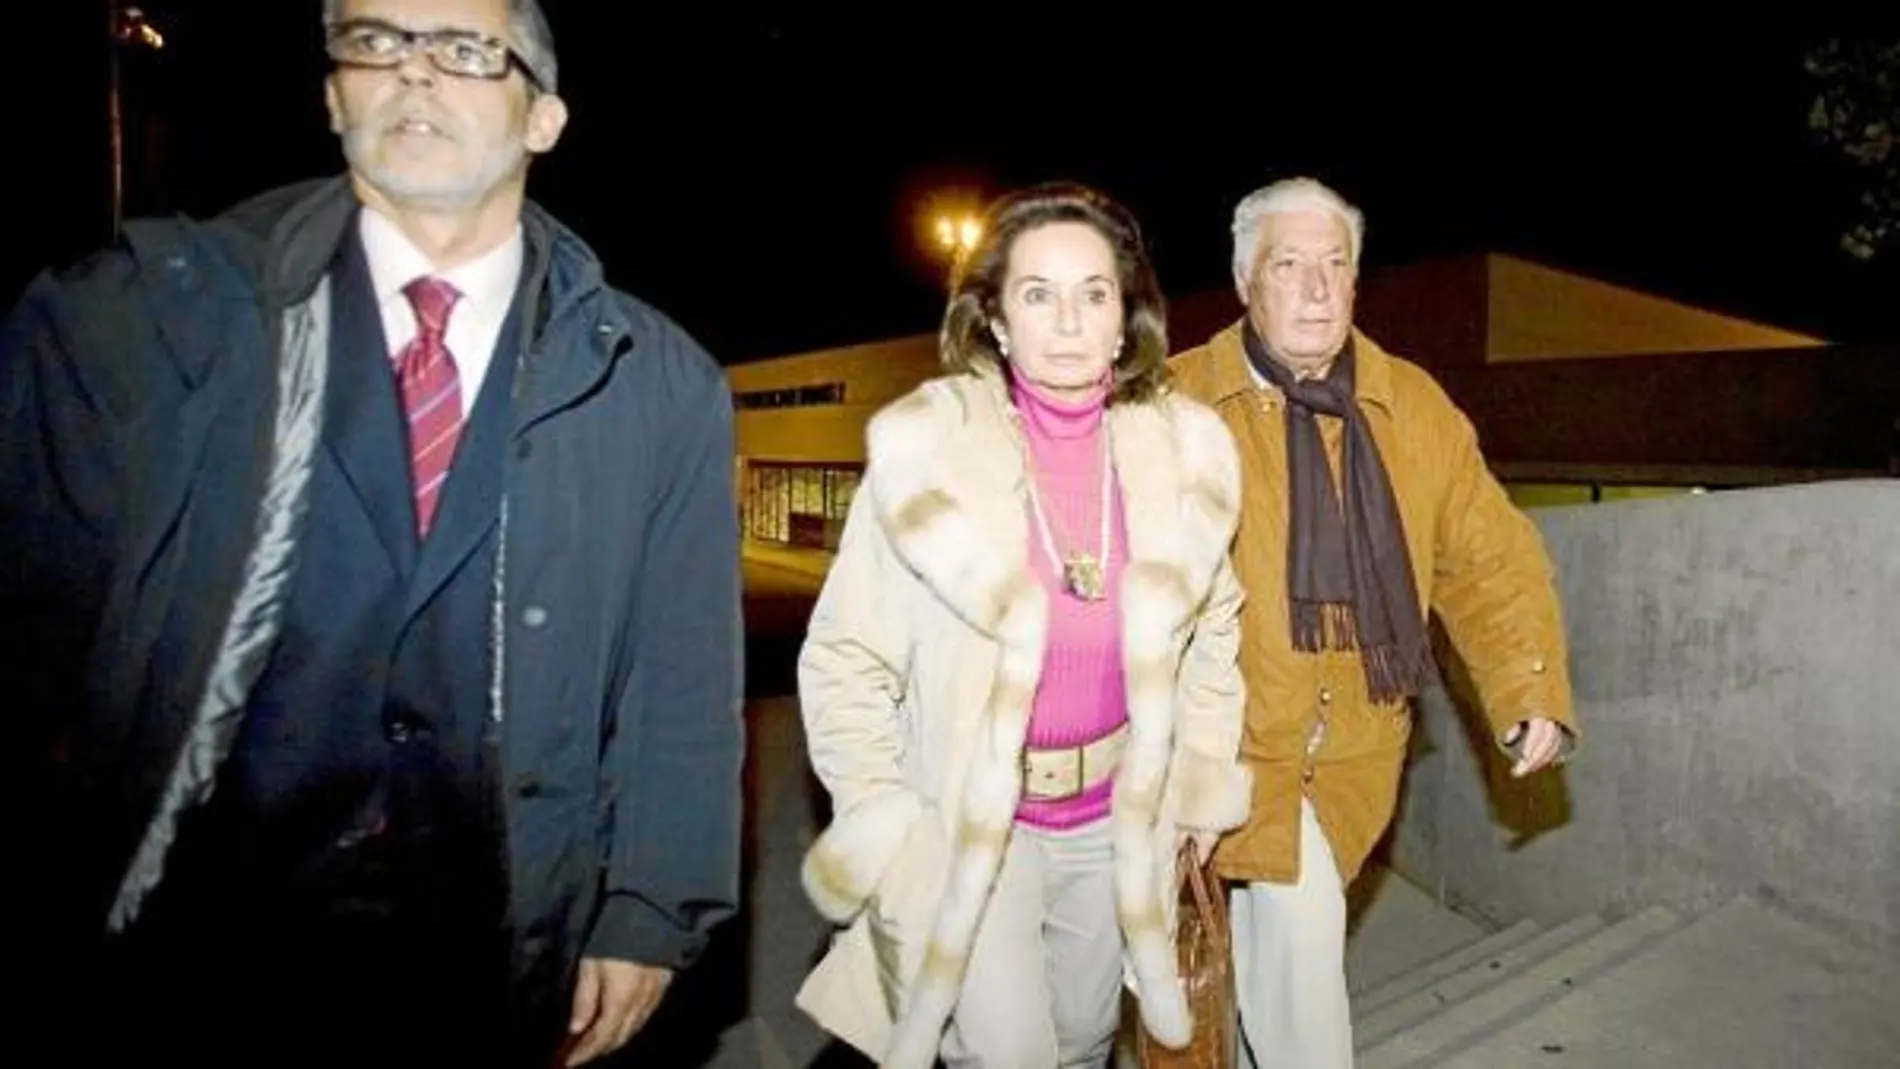 En la imagen, el ex dirigente de CiU, Macià Alavedra, junto a su esposa, Doris Malfeito, a la salida de la cárcel de Brians 2, el pasado diciembre